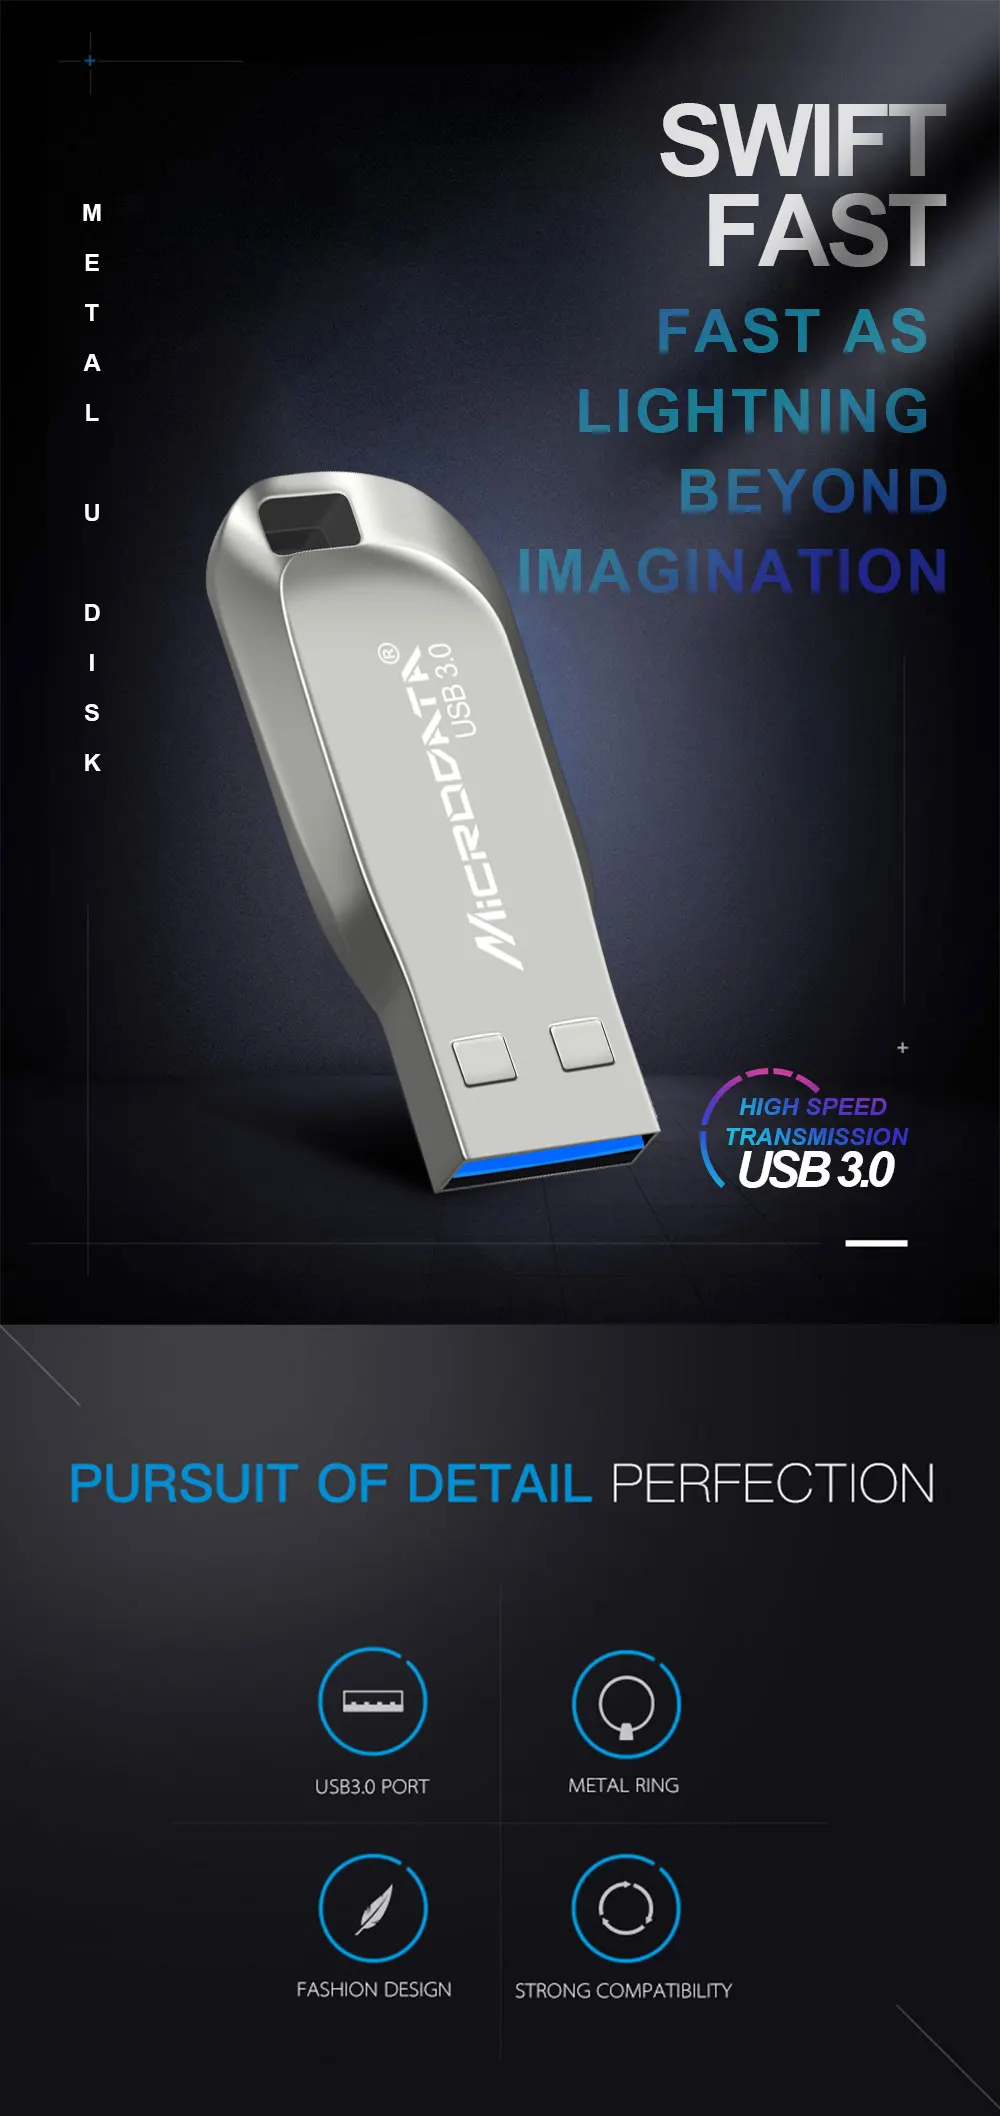 Серебристый/черный металлический USB флеш-накопитель Usb 3,0 флеш-накопитель 64 Гб 128 ГБ высокоскоростной флеш-накопитель 32 Гб 16 Гб мини USB флешка брелок флешка